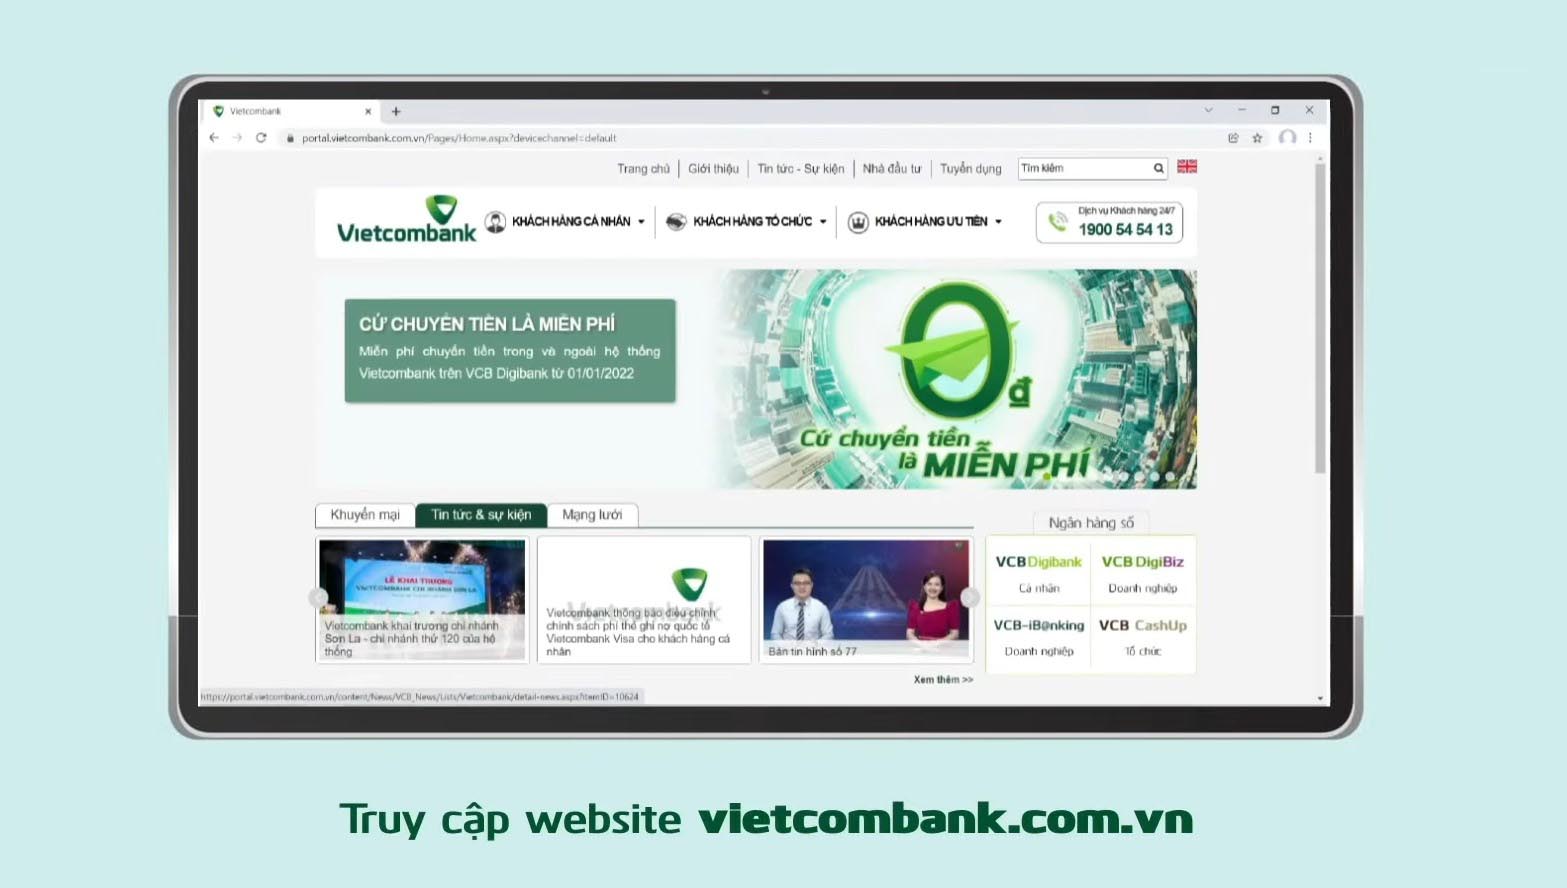 2-cách khóa thẻ vietcombank trên website máy tính (1)